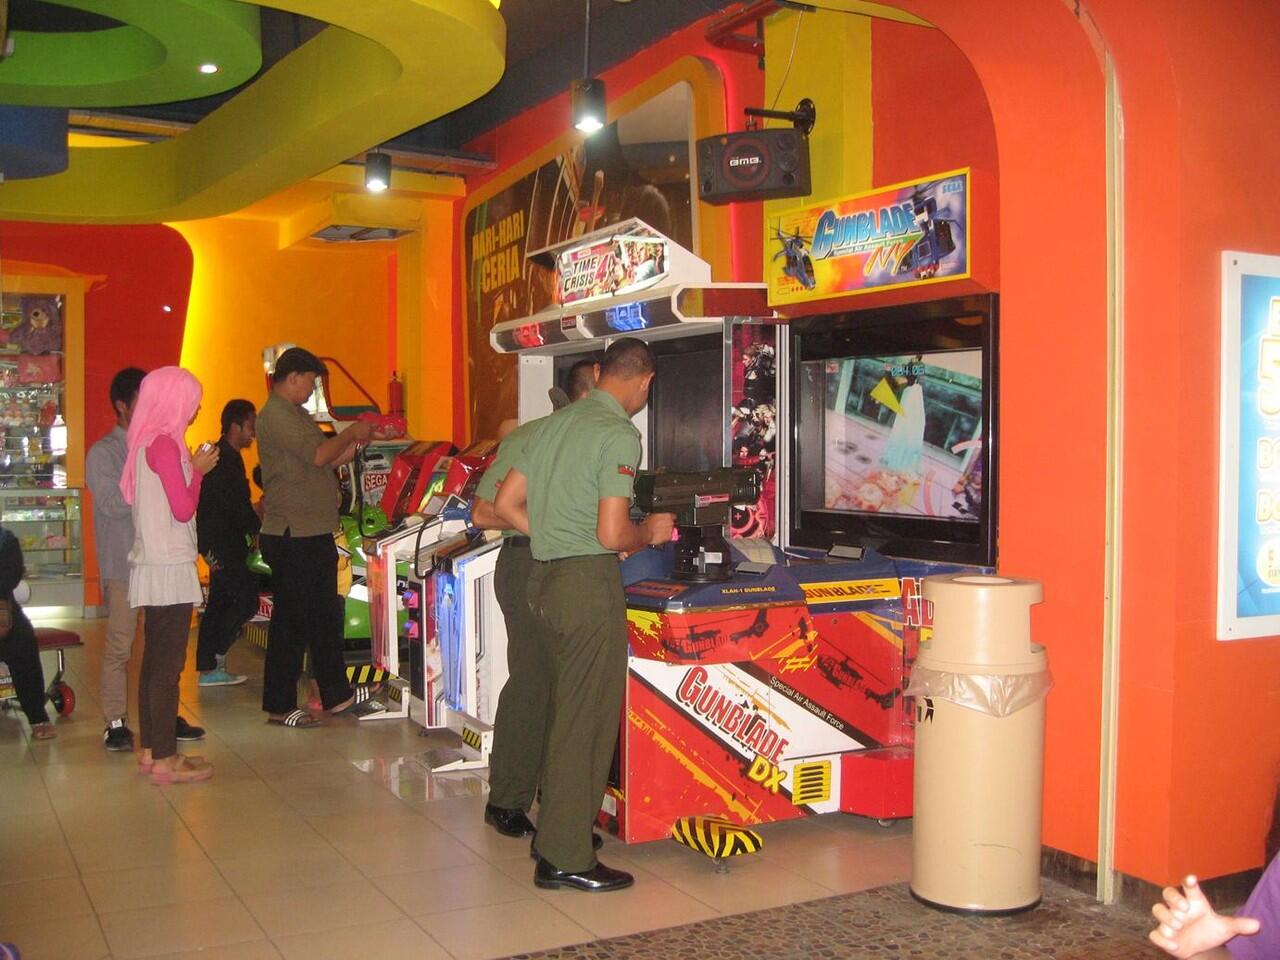 Simulasi perang di mall setelah pendidikan militer (no repost) photo sendiri